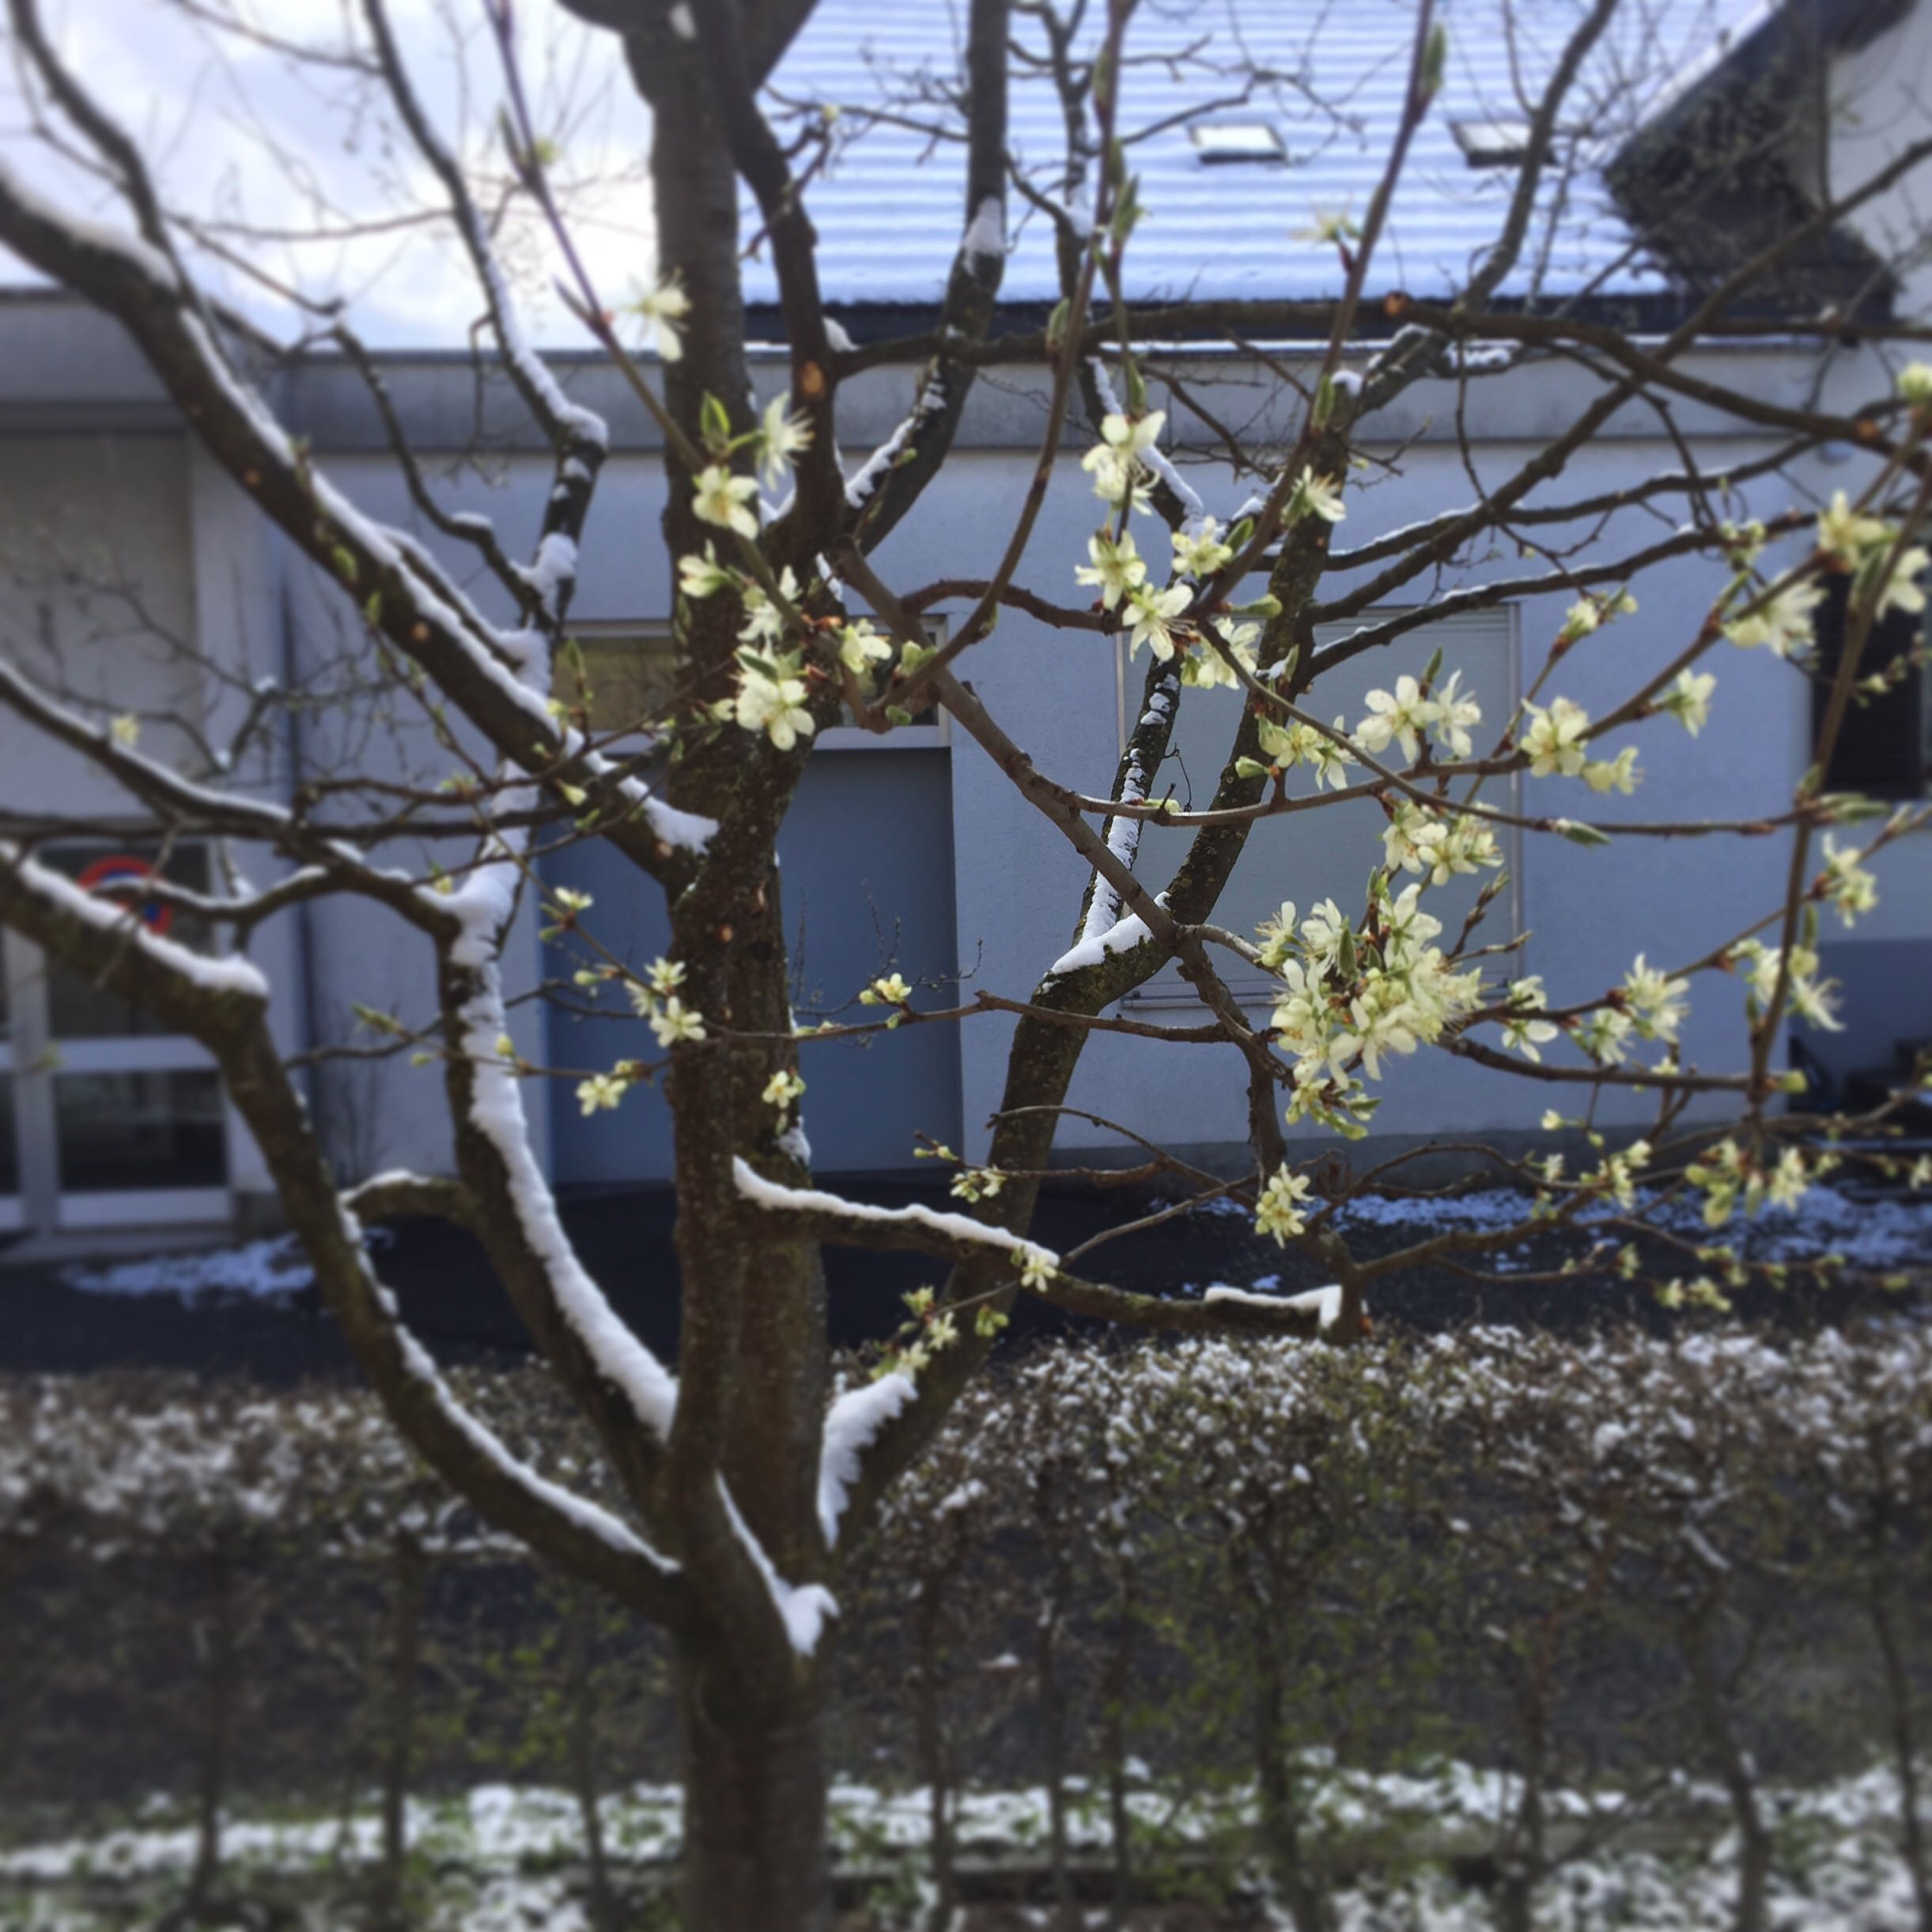 Schnee im April auf einem Zwetschkenbaum mit Blüten.